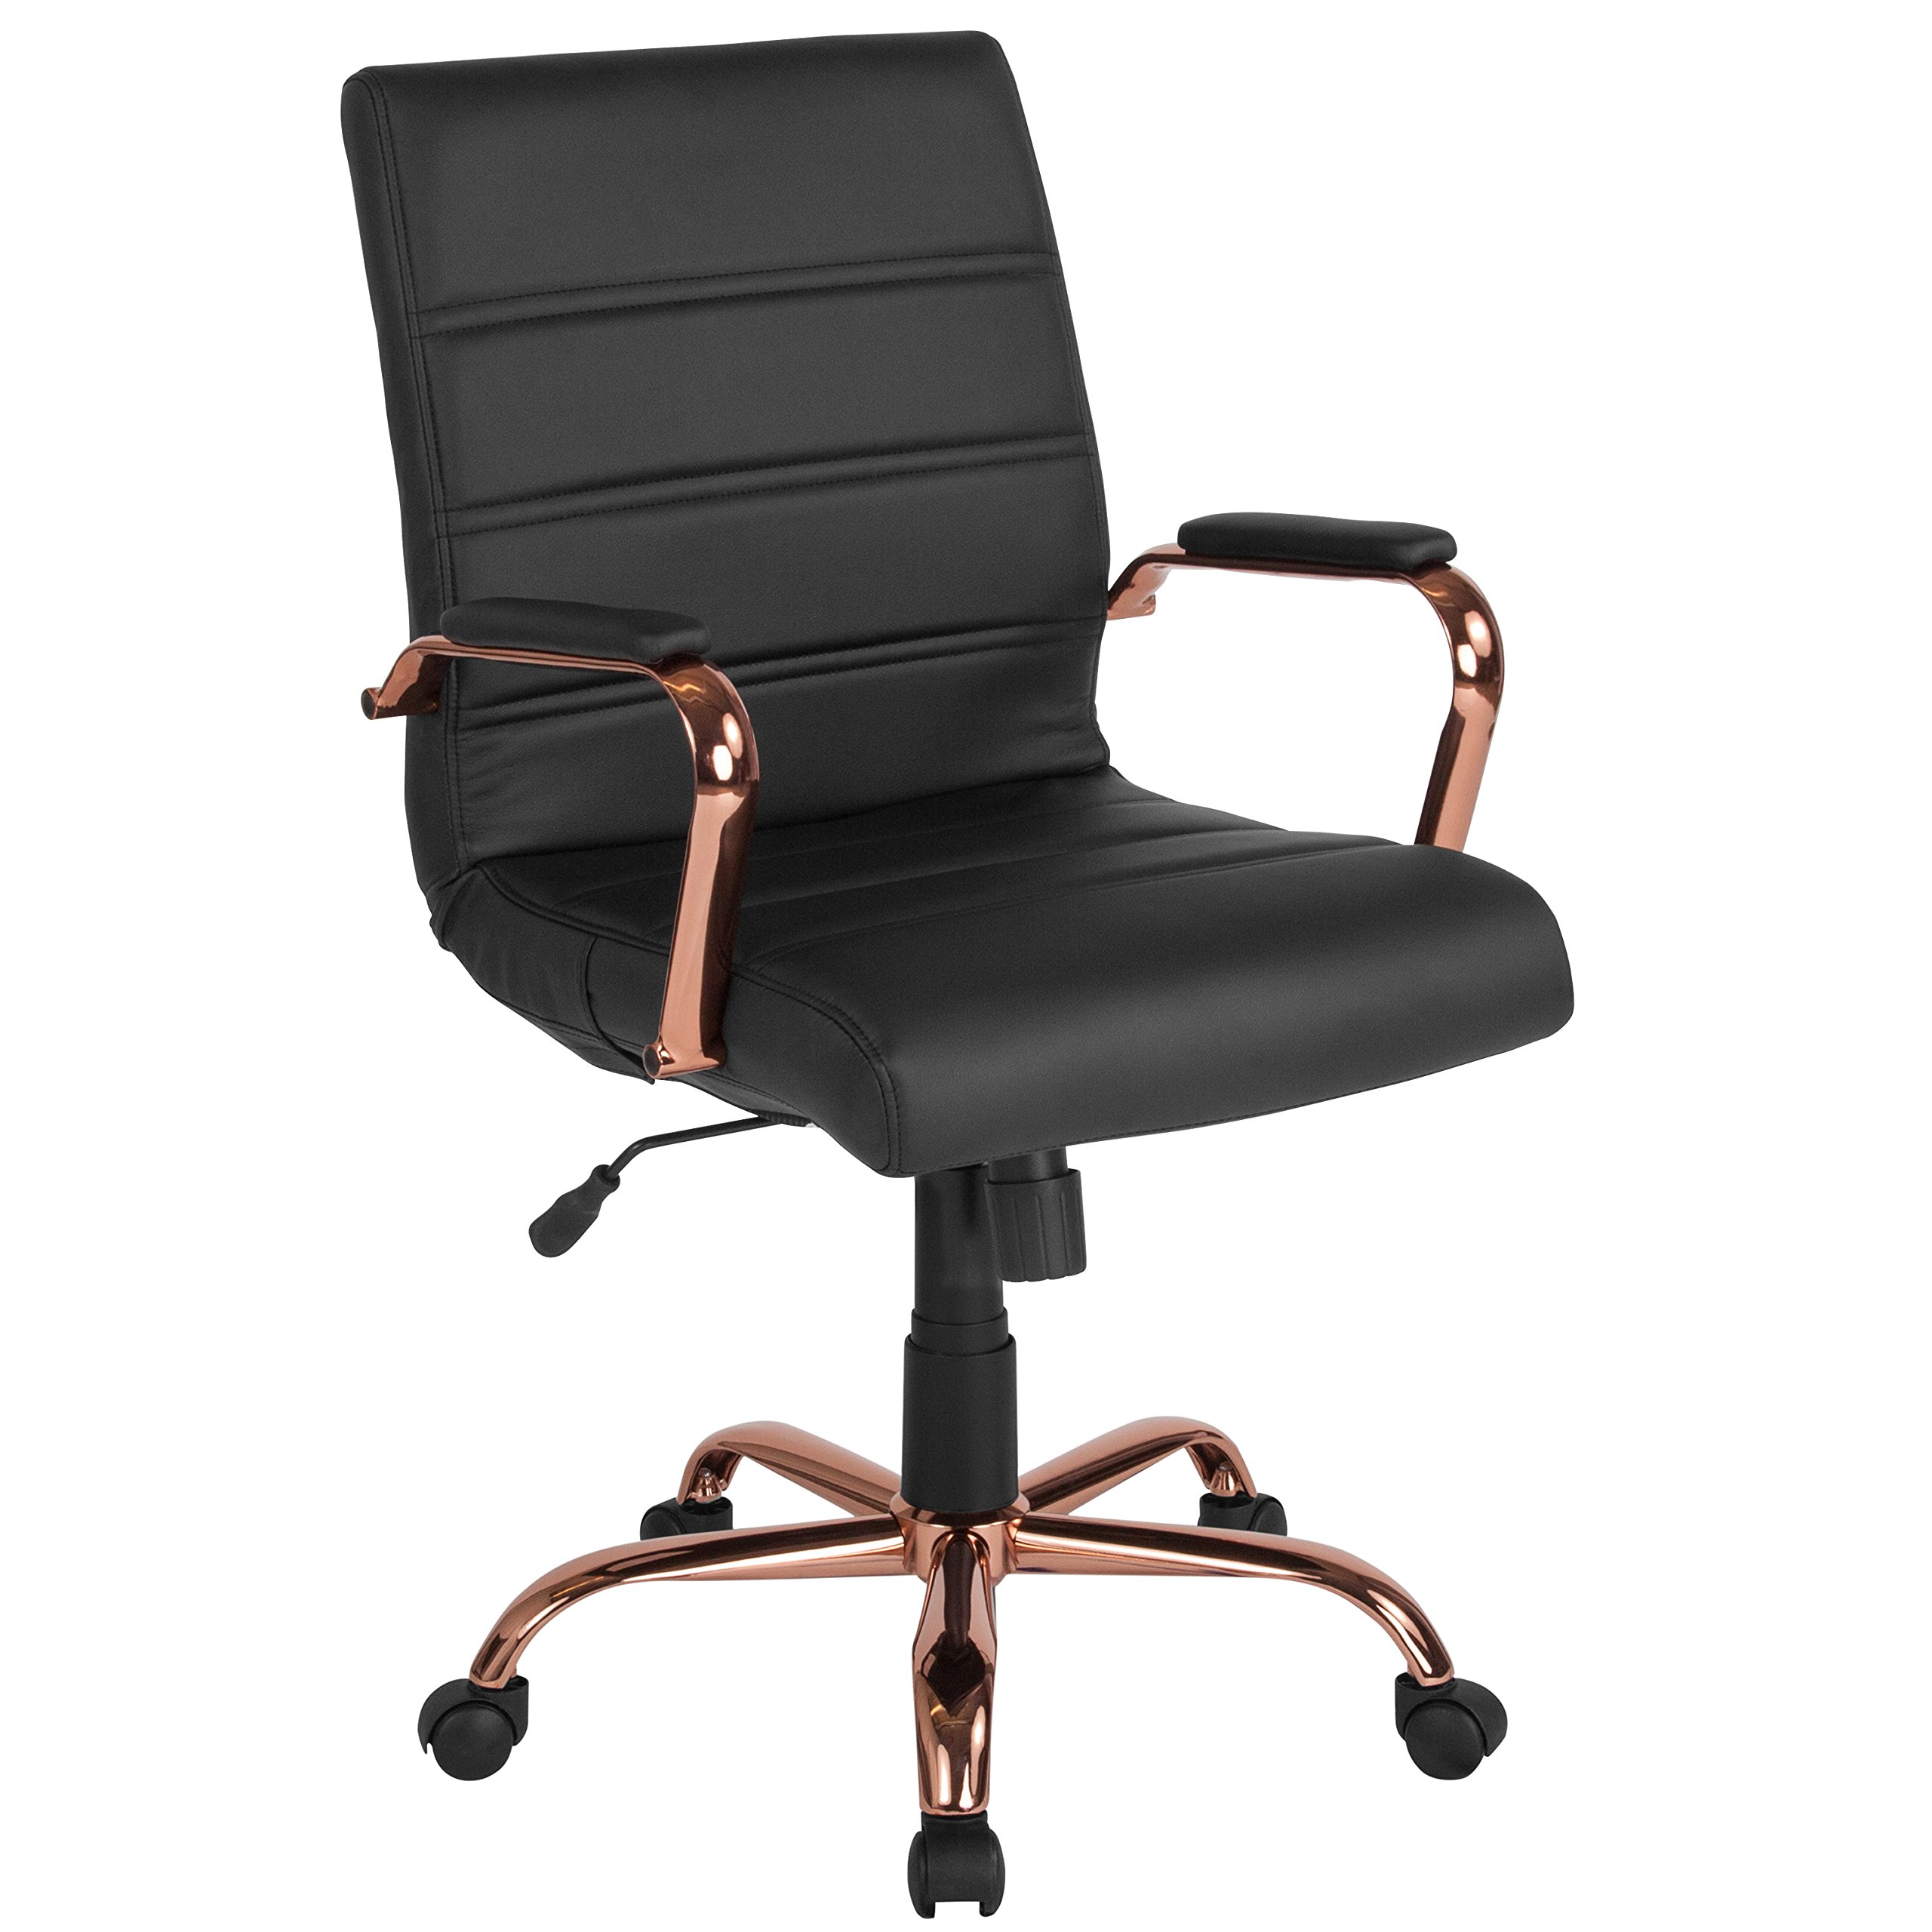  Flash Furniture Настольный стул со средней спинкой - Черный кожаный мягкий офисный стул для руководителя с рамой из...